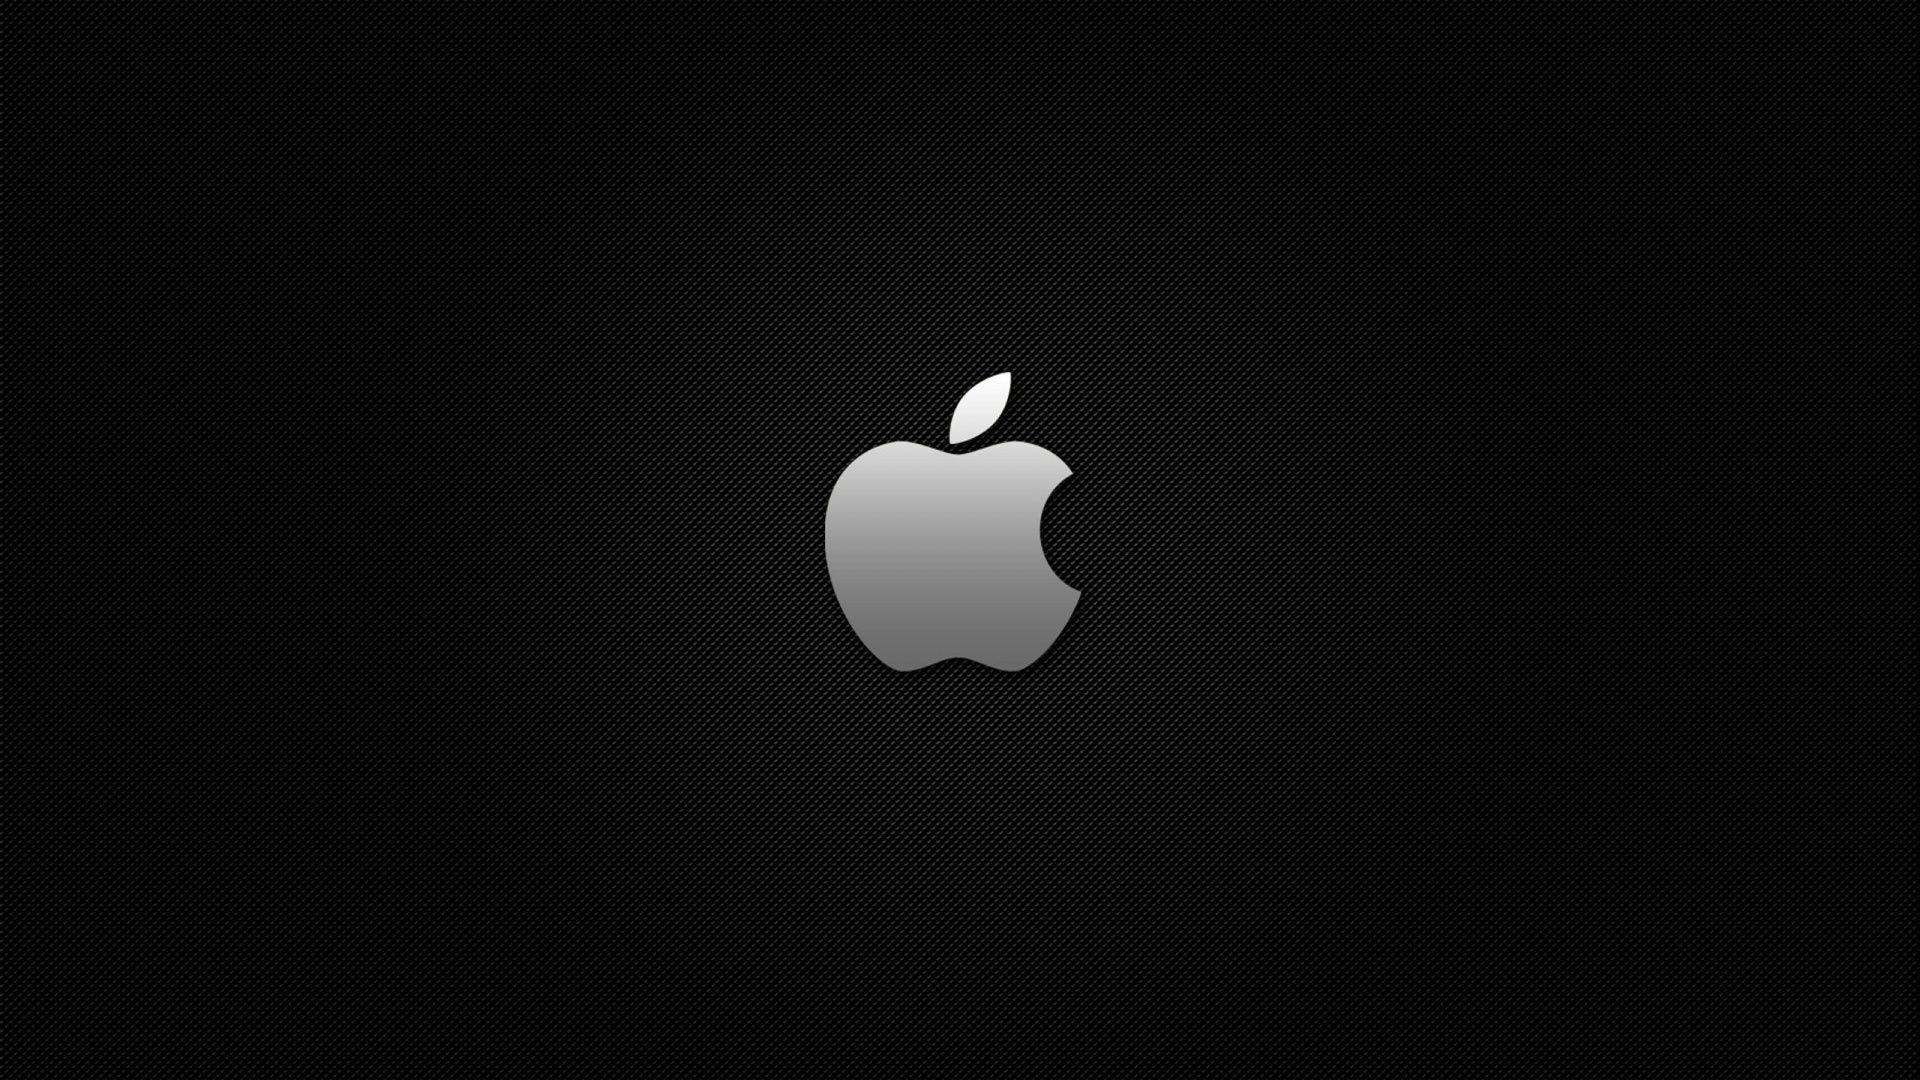 Black Apple Logo Wallpaper HD Wallpaper in 2019